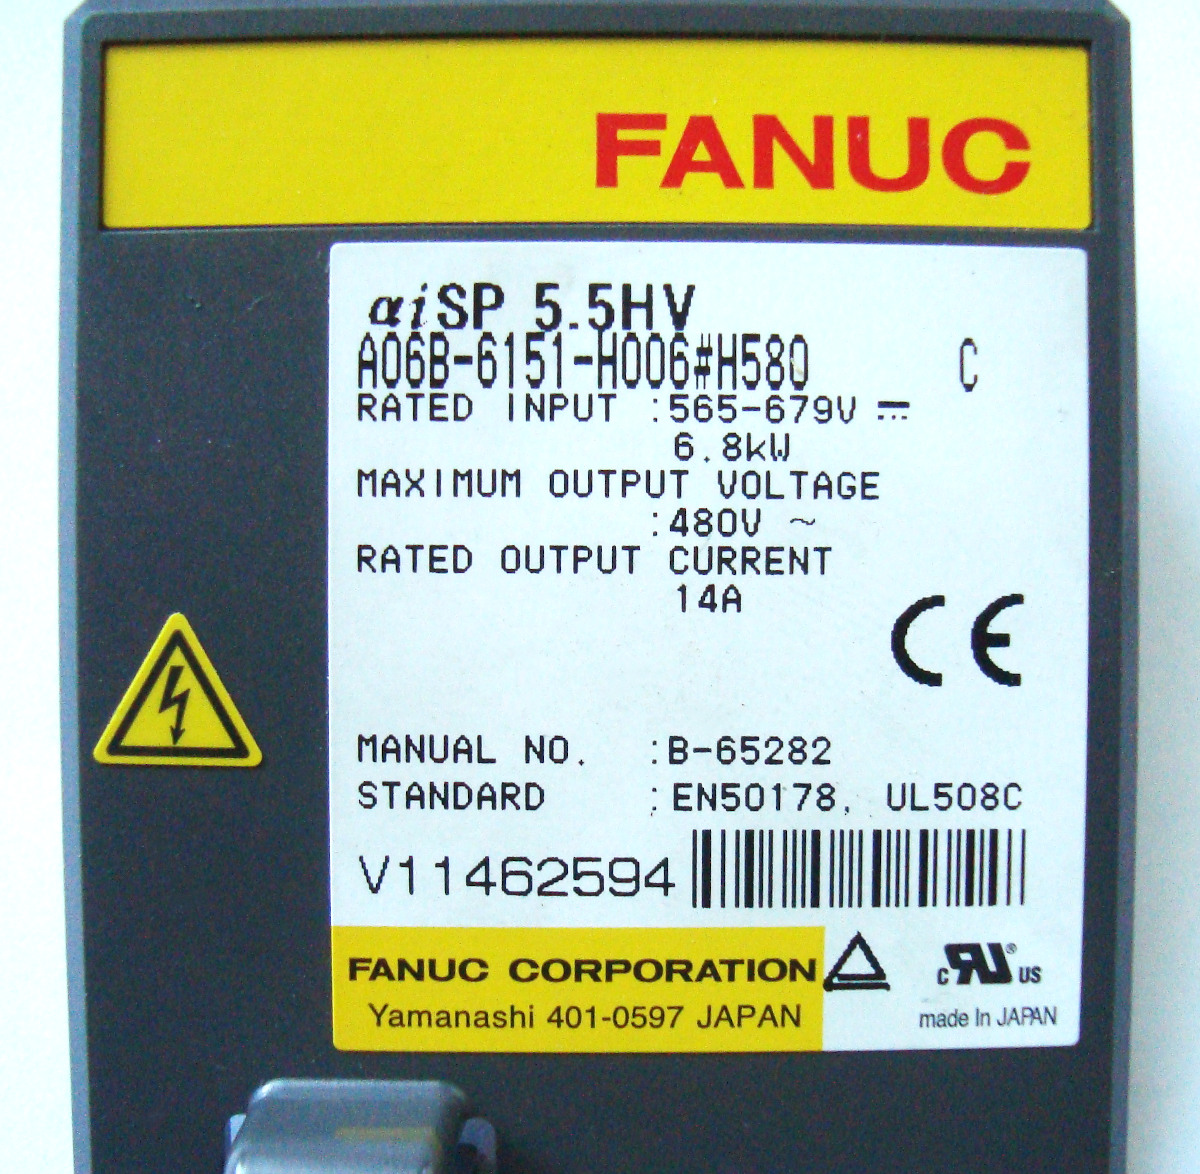 4 Fanuc Spindel Controller A06b-6151-h006 Reparieren